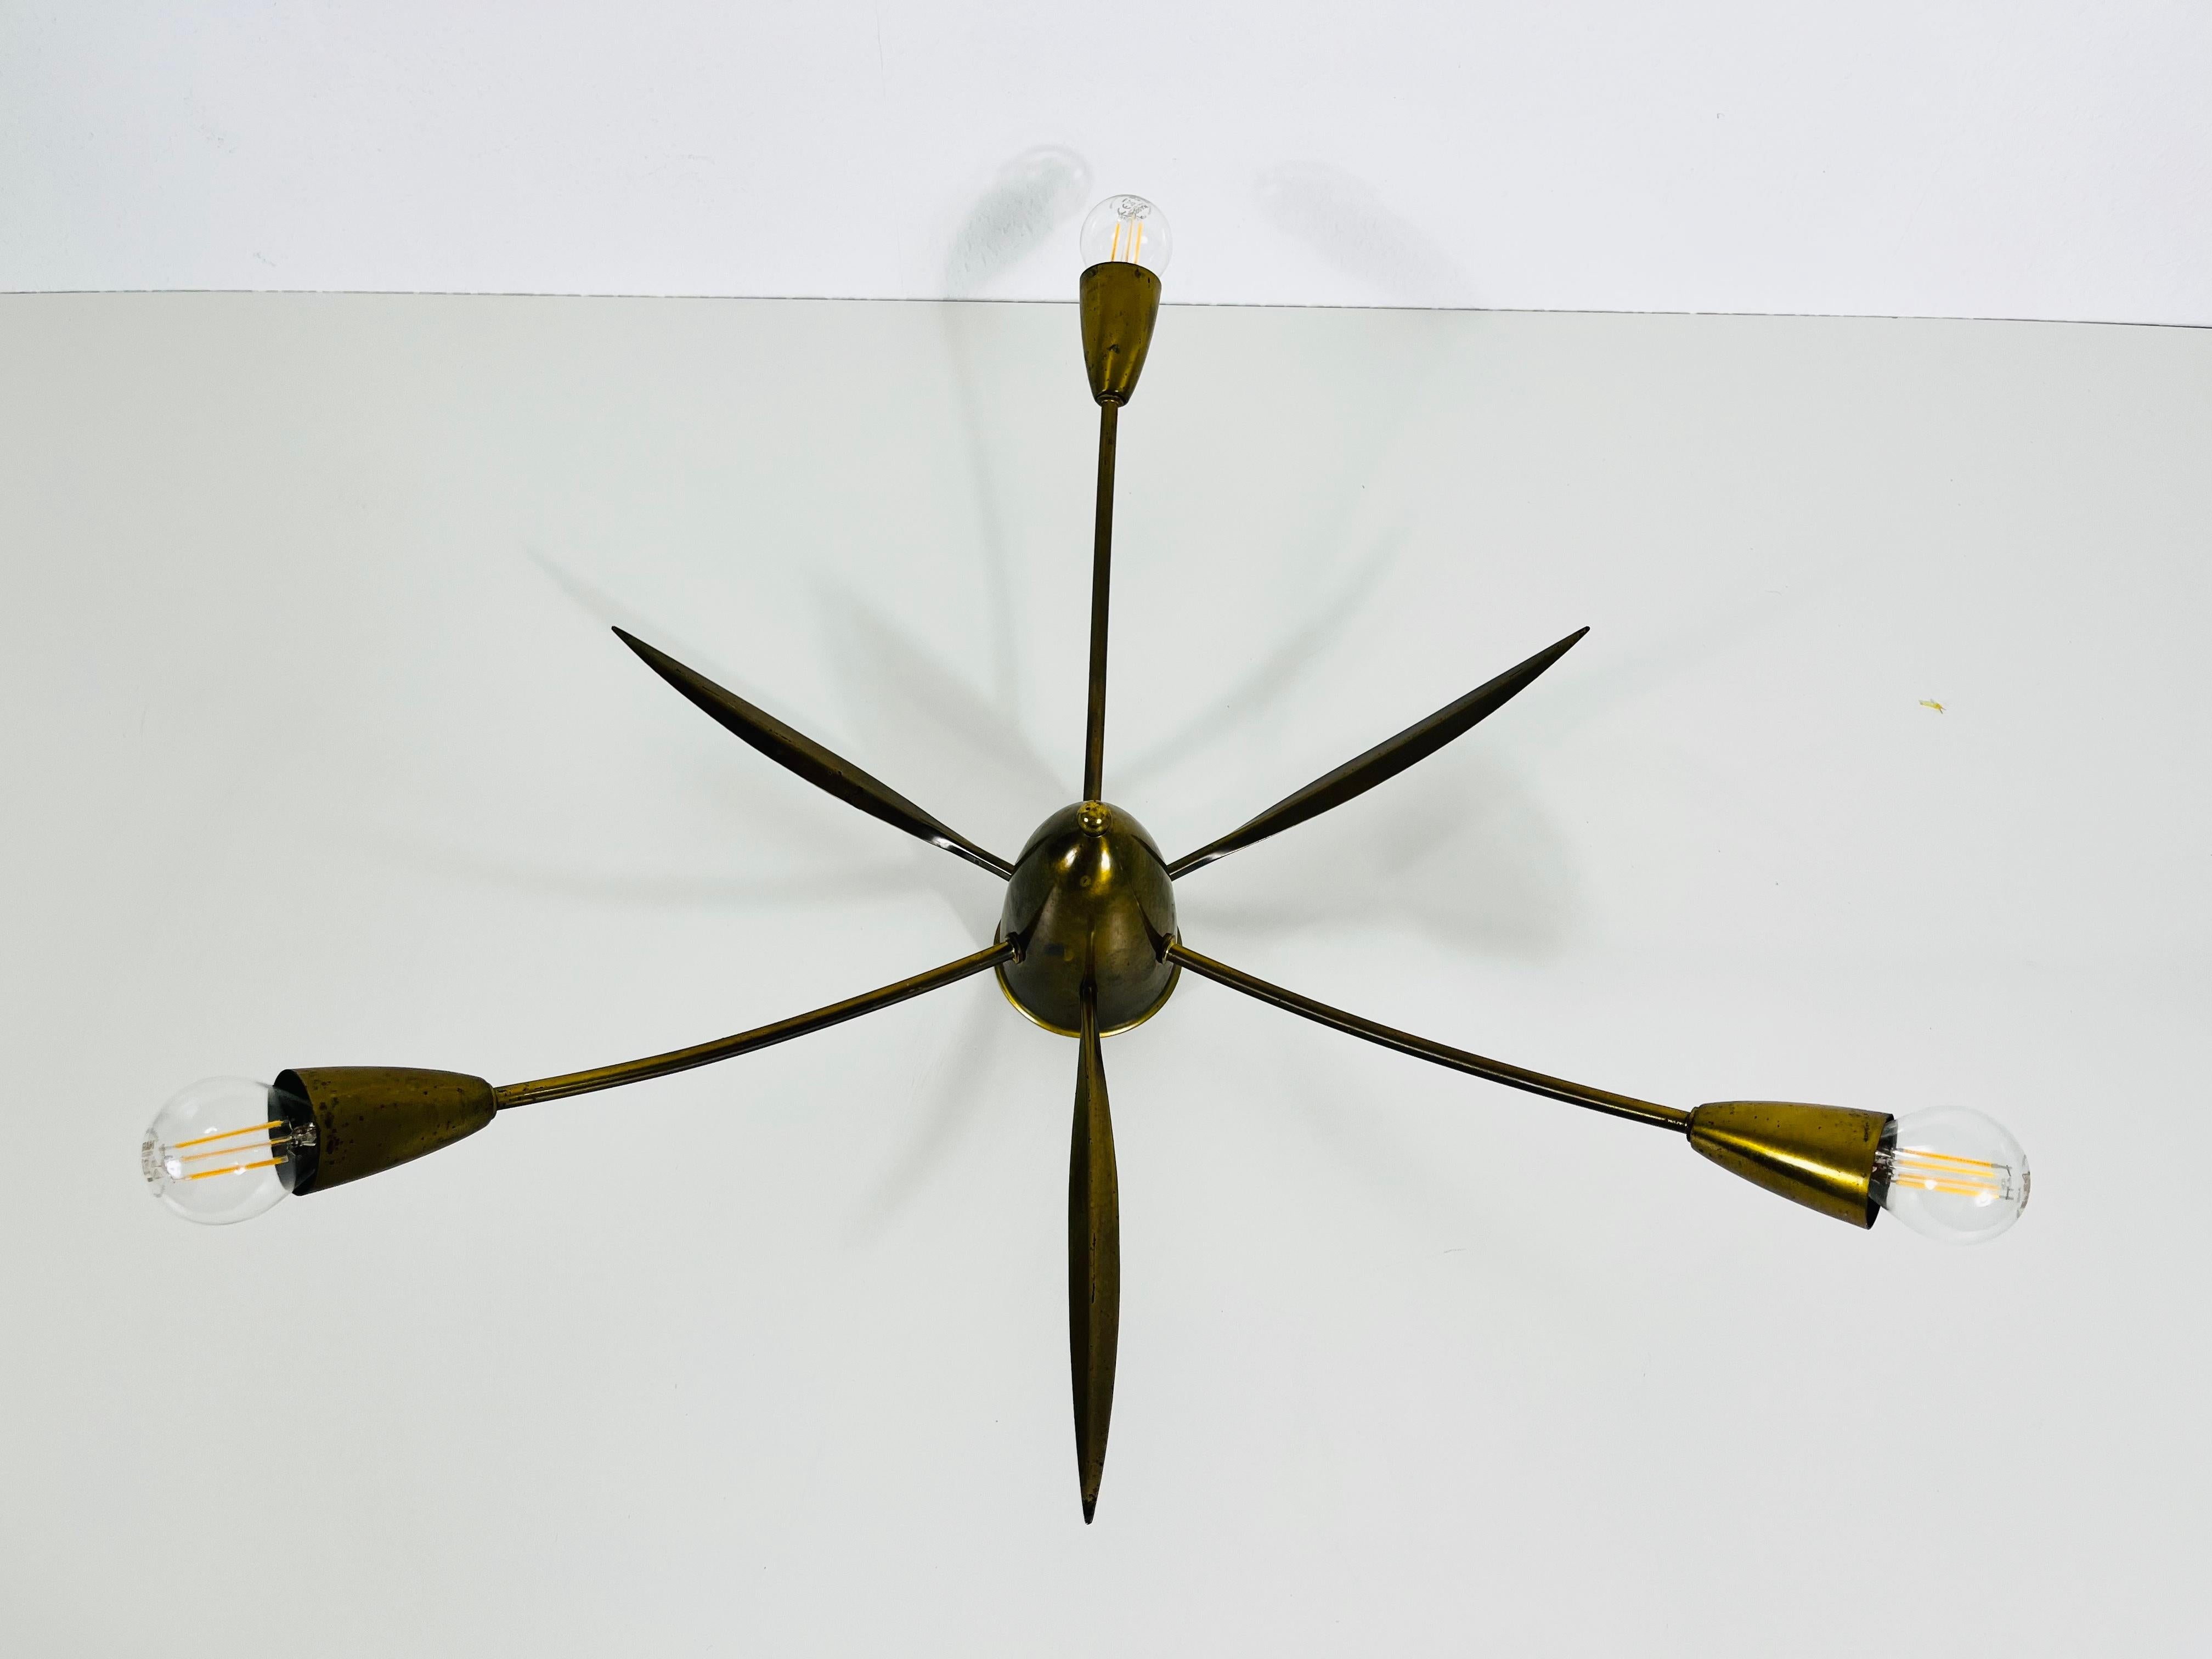 Un lustre Sputnik fabriqué en Allemagne dans les années 1950. Il est fascinant avec ses trois bras en laiton, chacun d'eux étant équipé d'une ampoule E14. La forme de la lumière est semblable à celle d'une araignée.

La lampe nécessite 3 ampoules